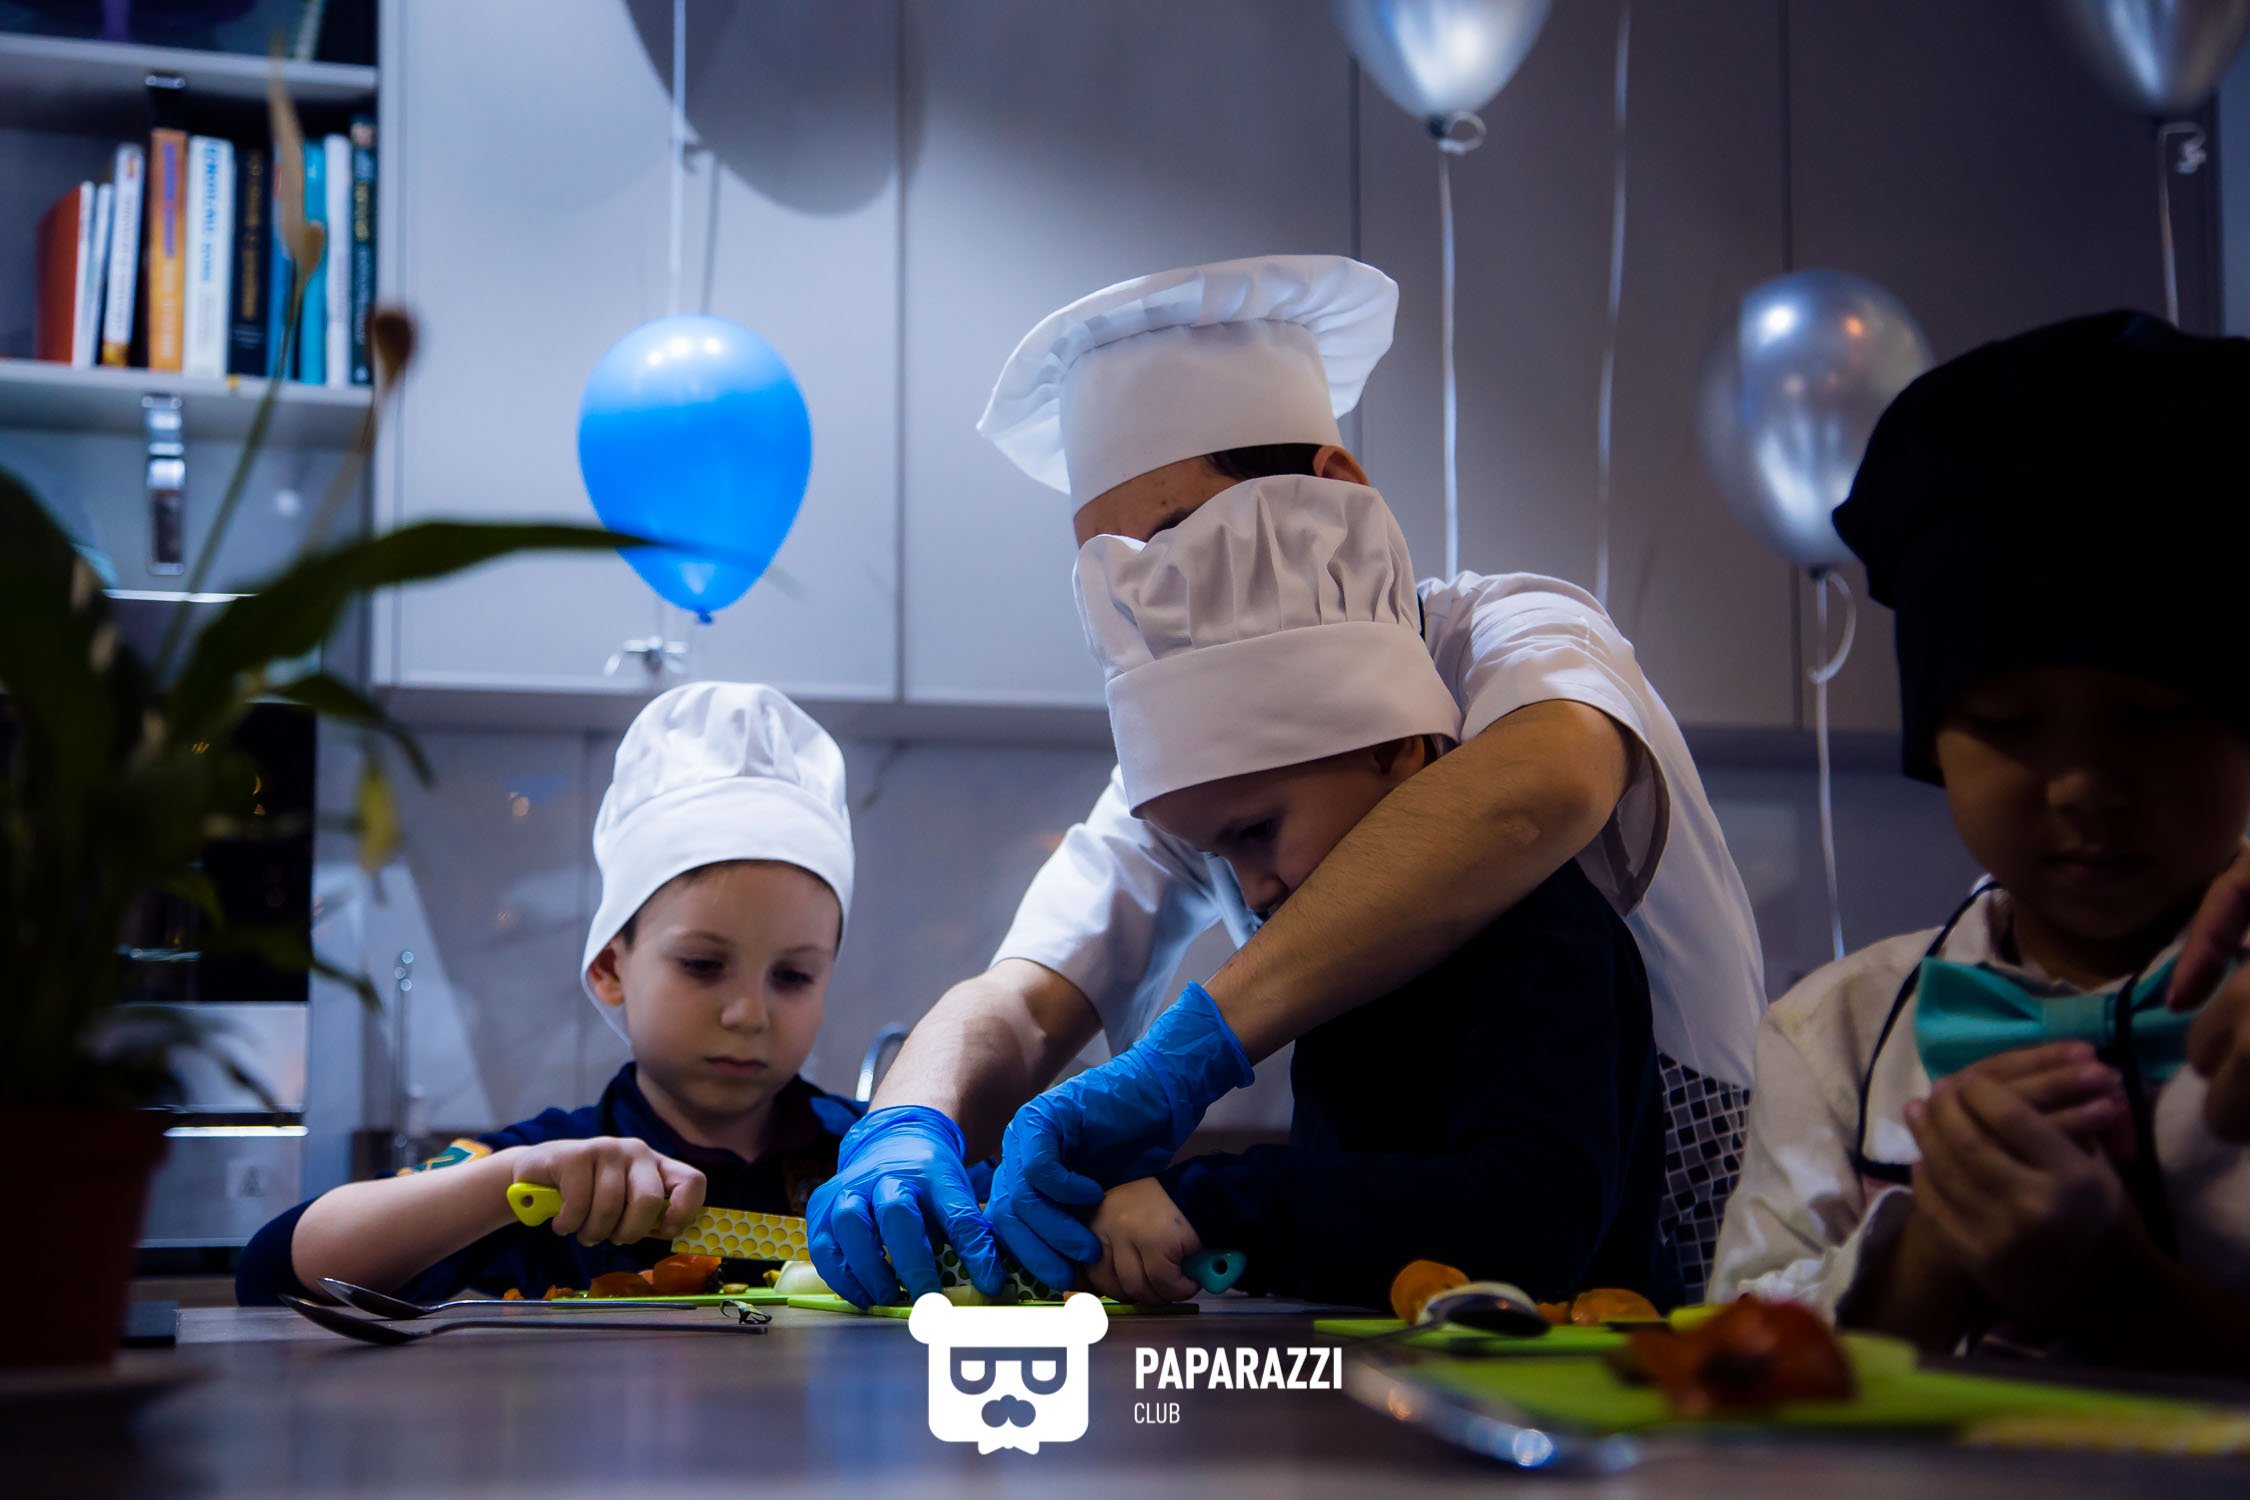 Black Duck Cafe & Cooking Studio- Детский День рождения в формате кулинарного мастер класса